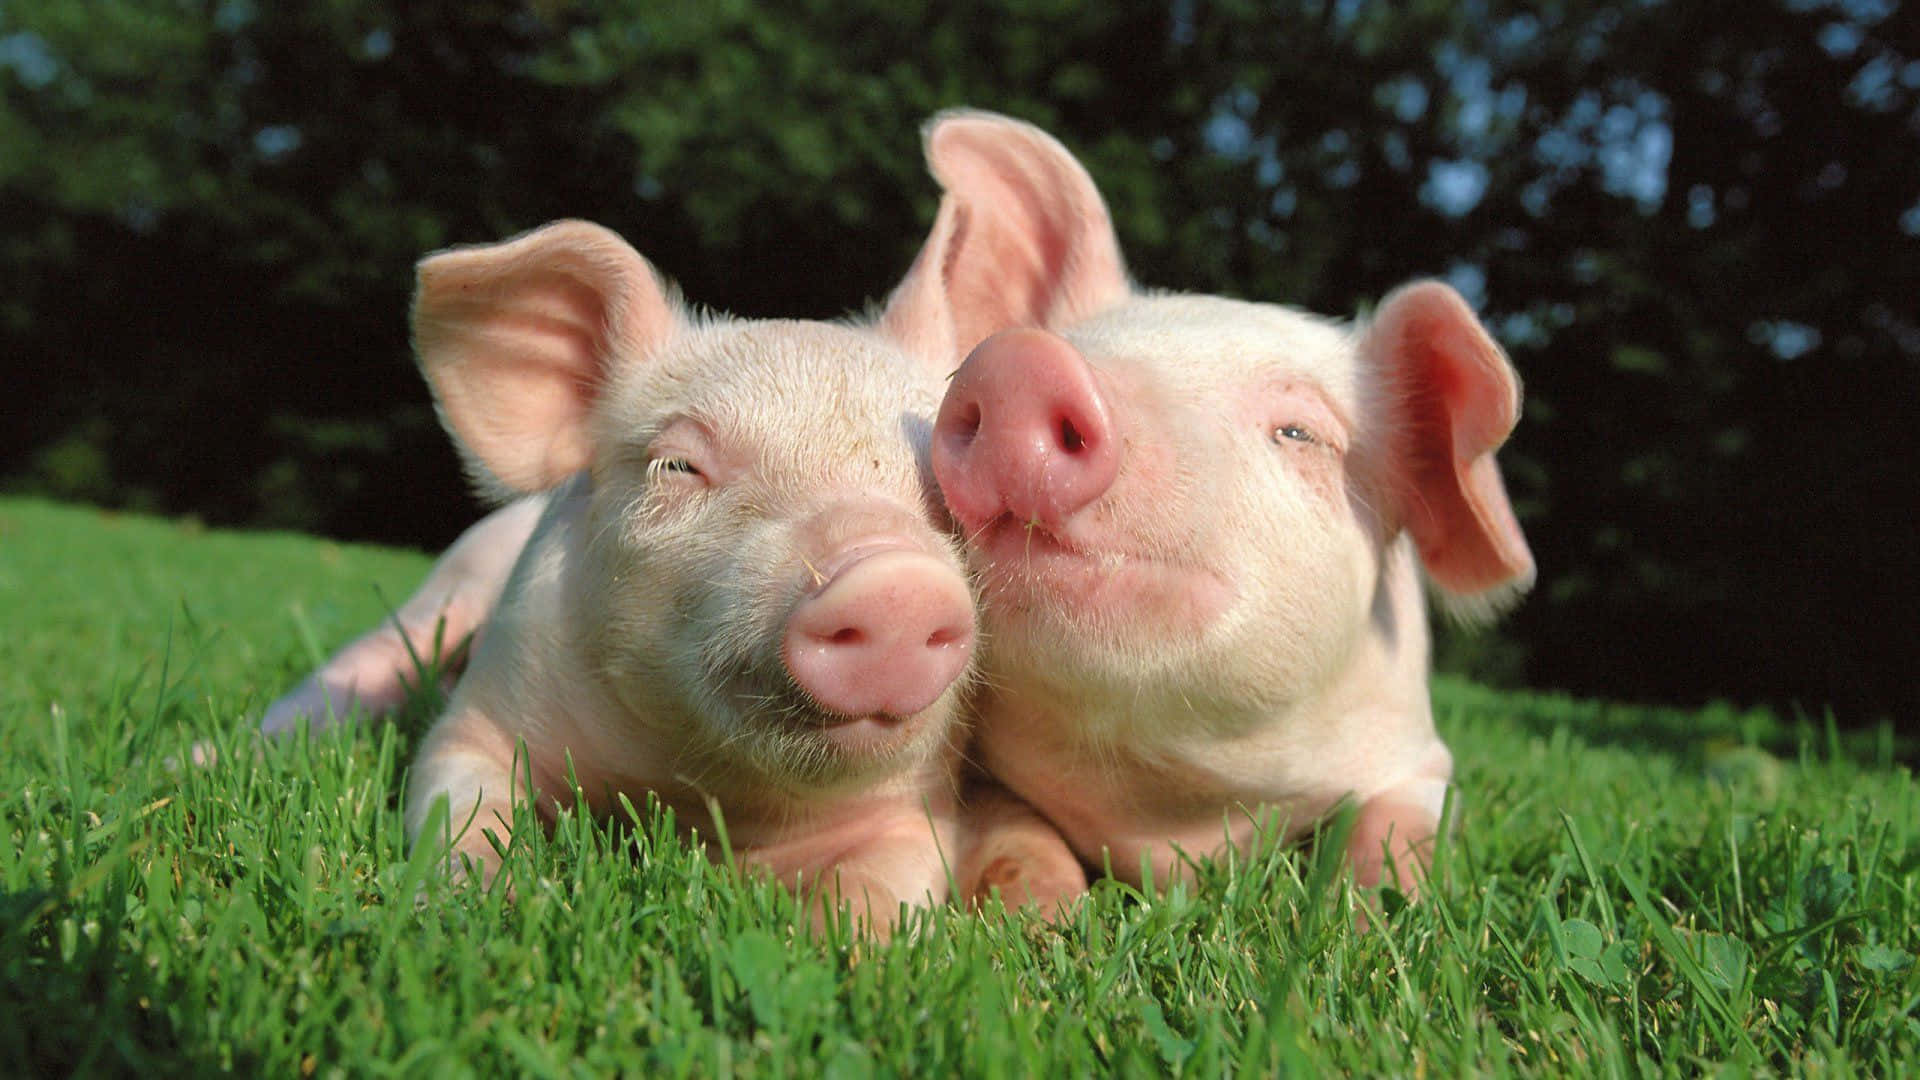 Cute Pigs Cuddling Friends Picture